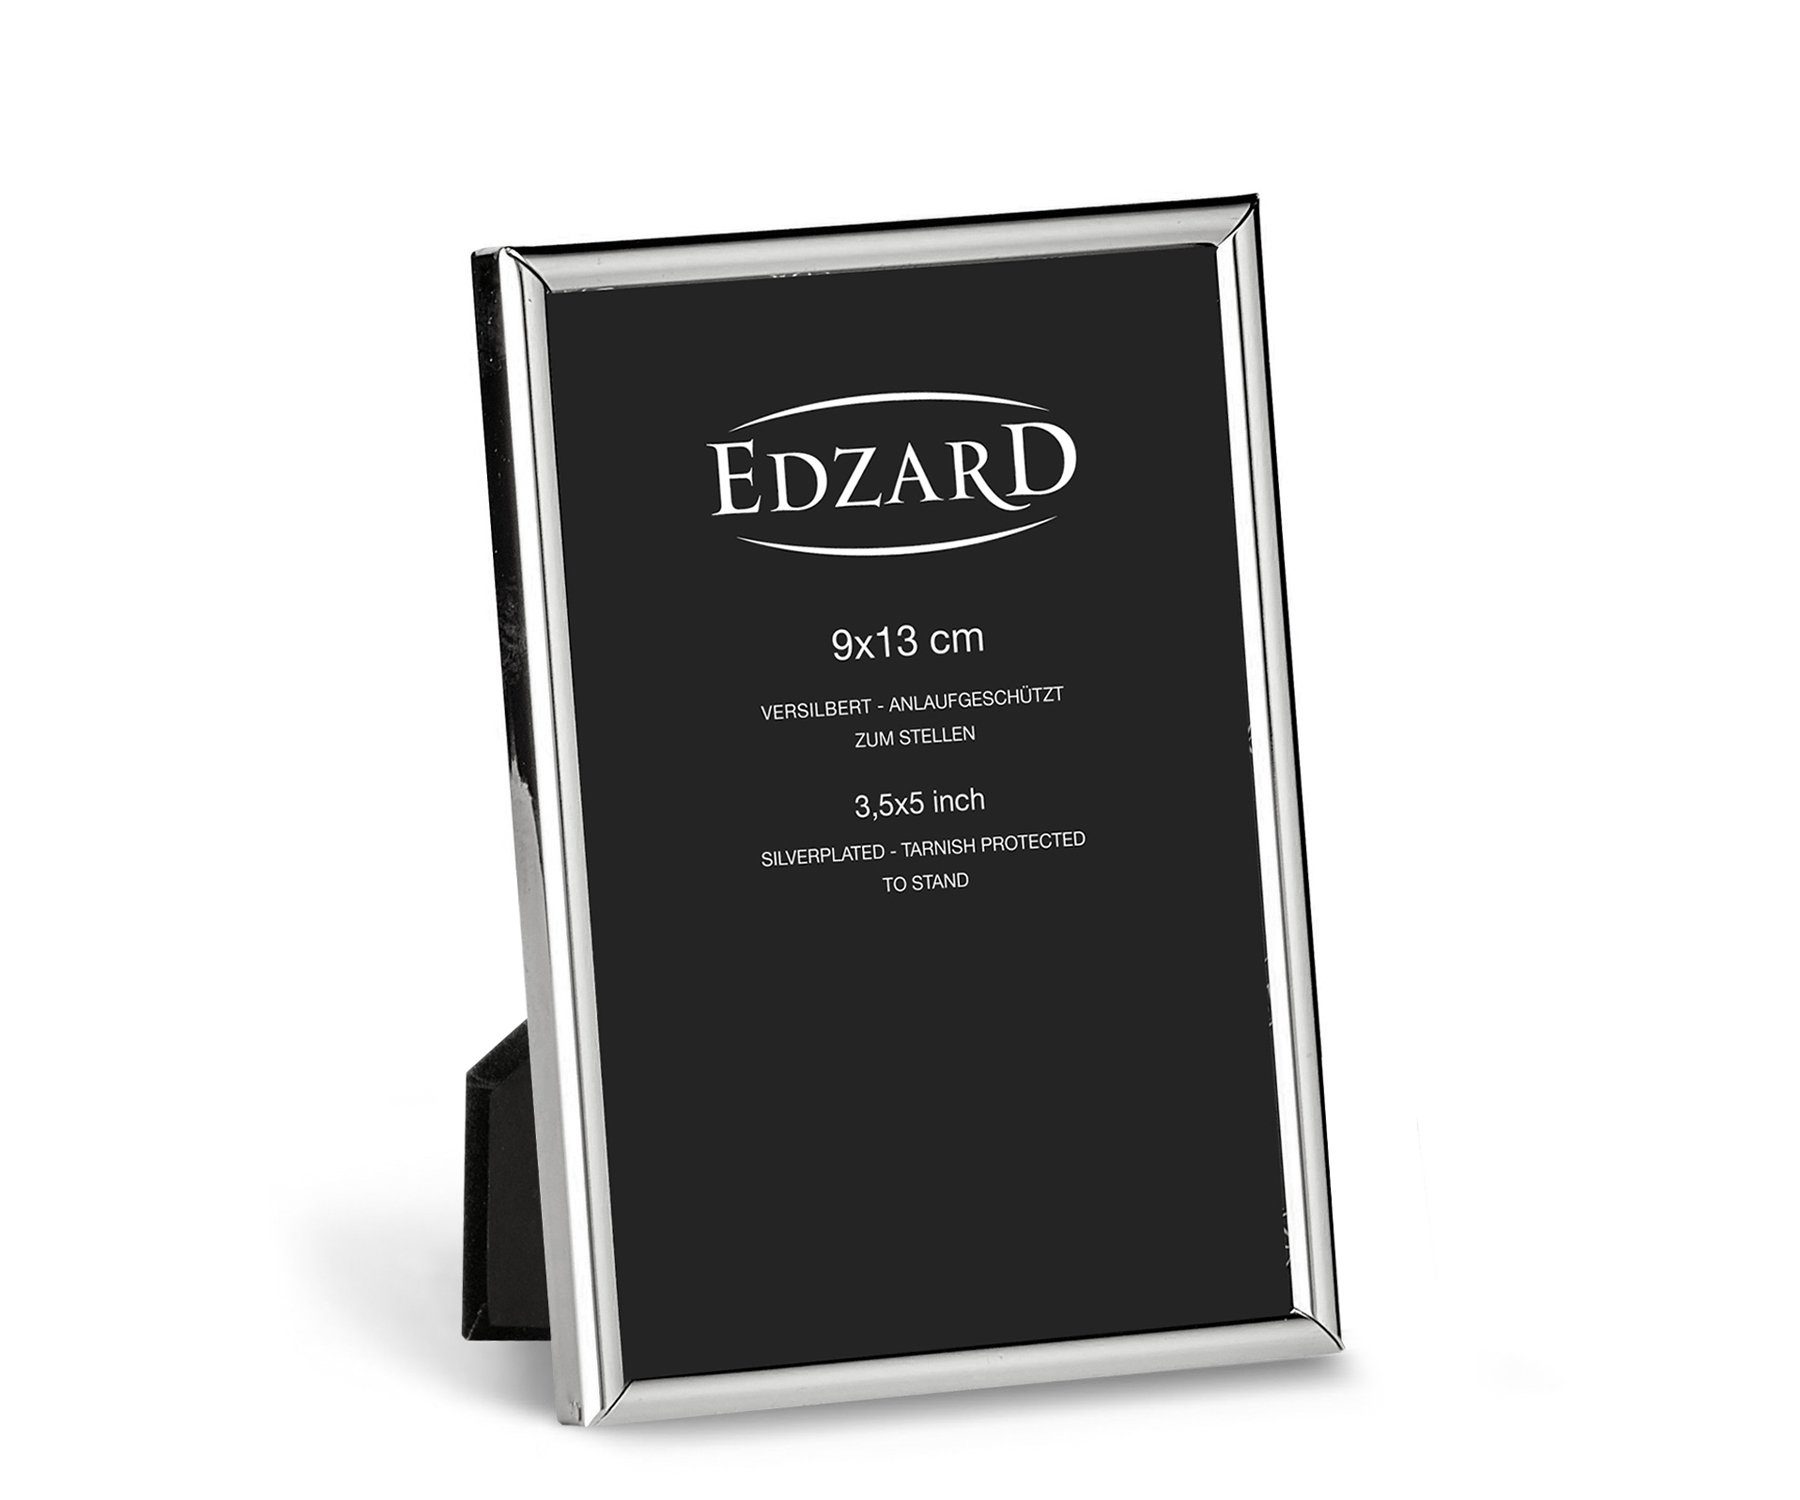 EDZARD Bilderrahmen Genua, edel versilbert und anlaufgeschützt, für 9x13 cm Foto